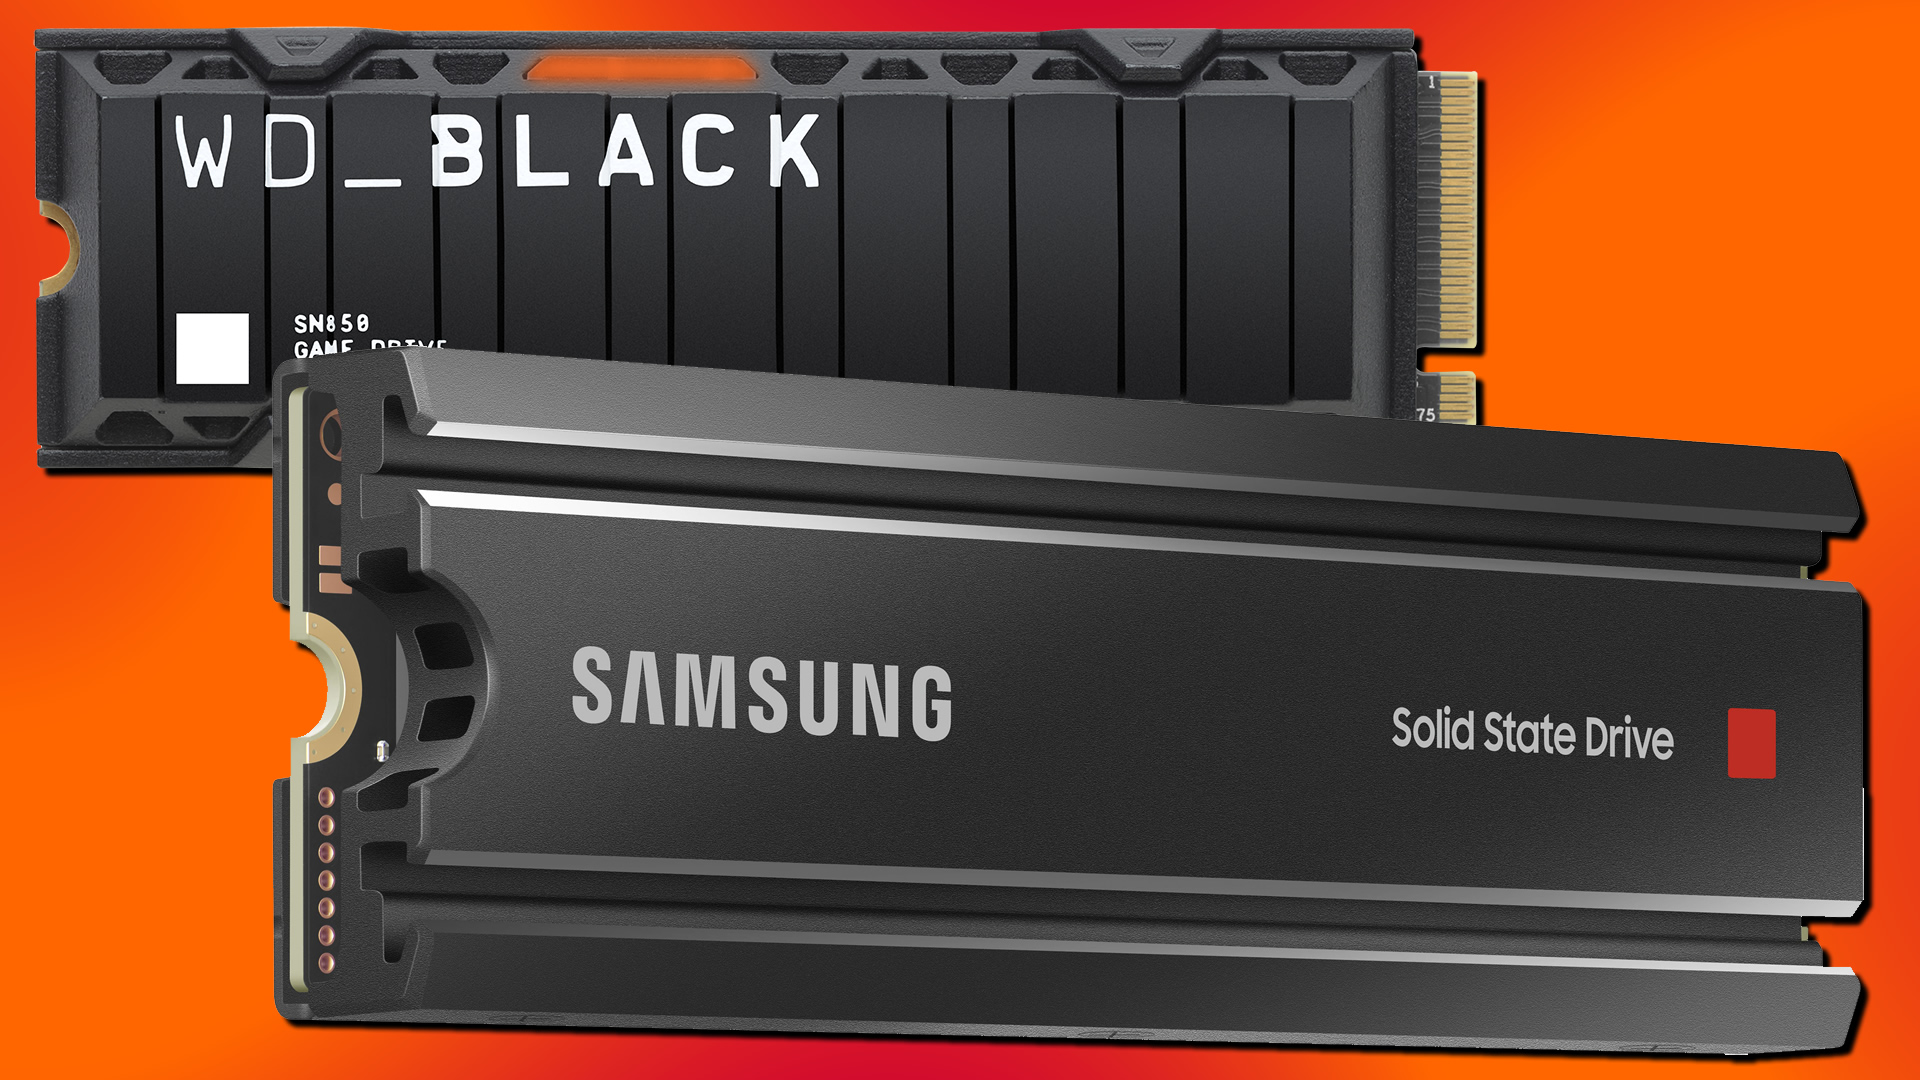 Samsung 980 Pro Vs Wd Black Sn850